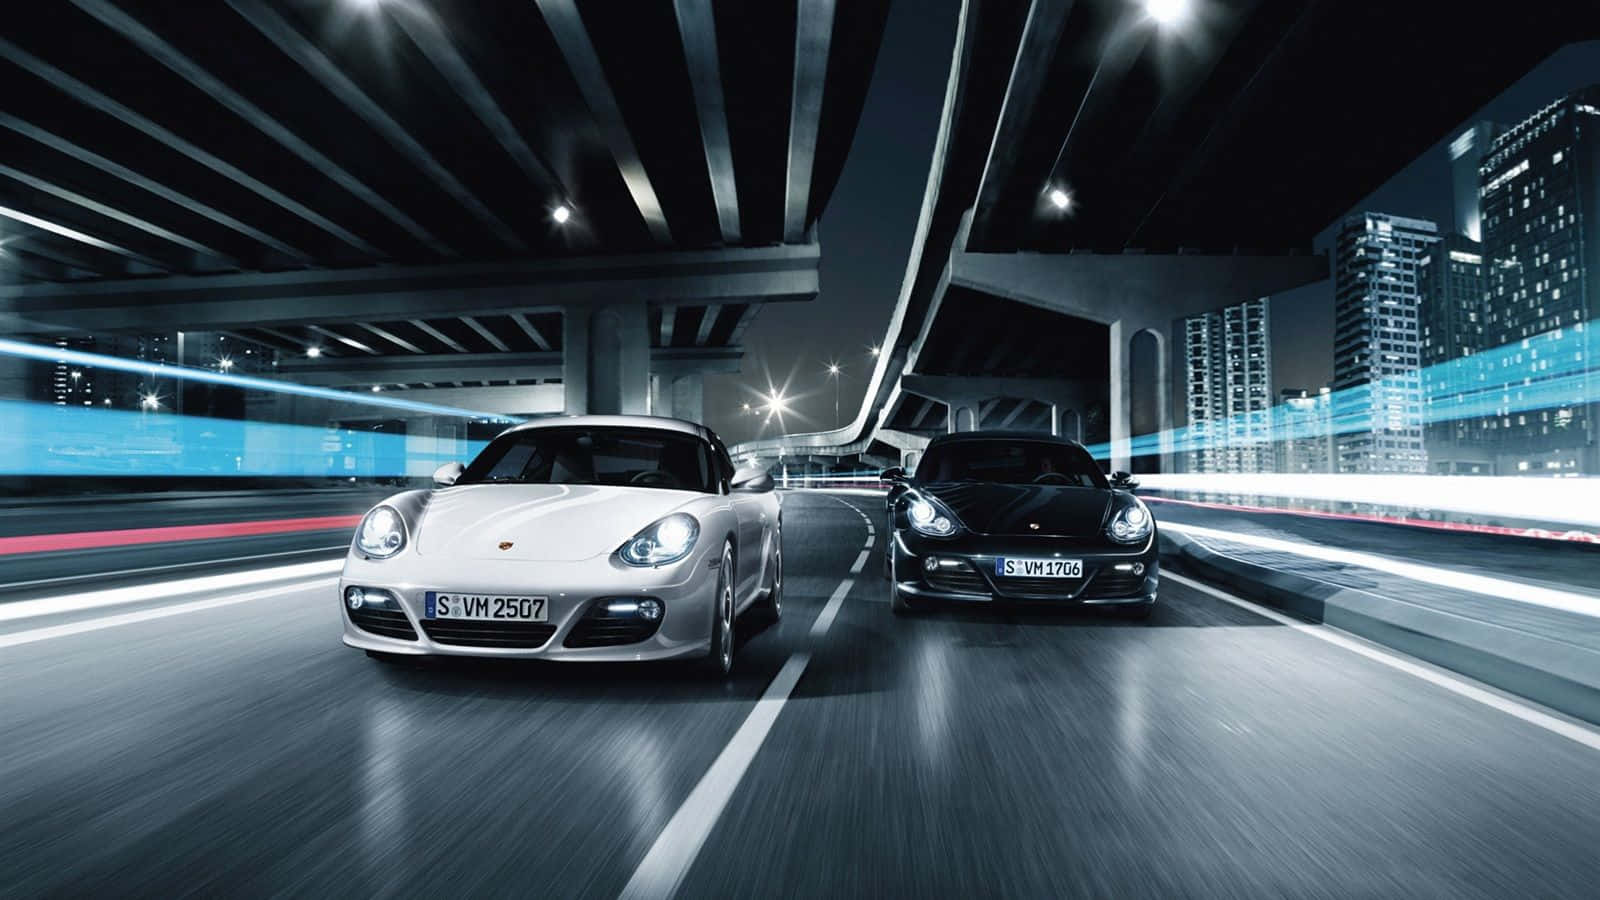 Porschecayman S - Anzeige Wallpaper